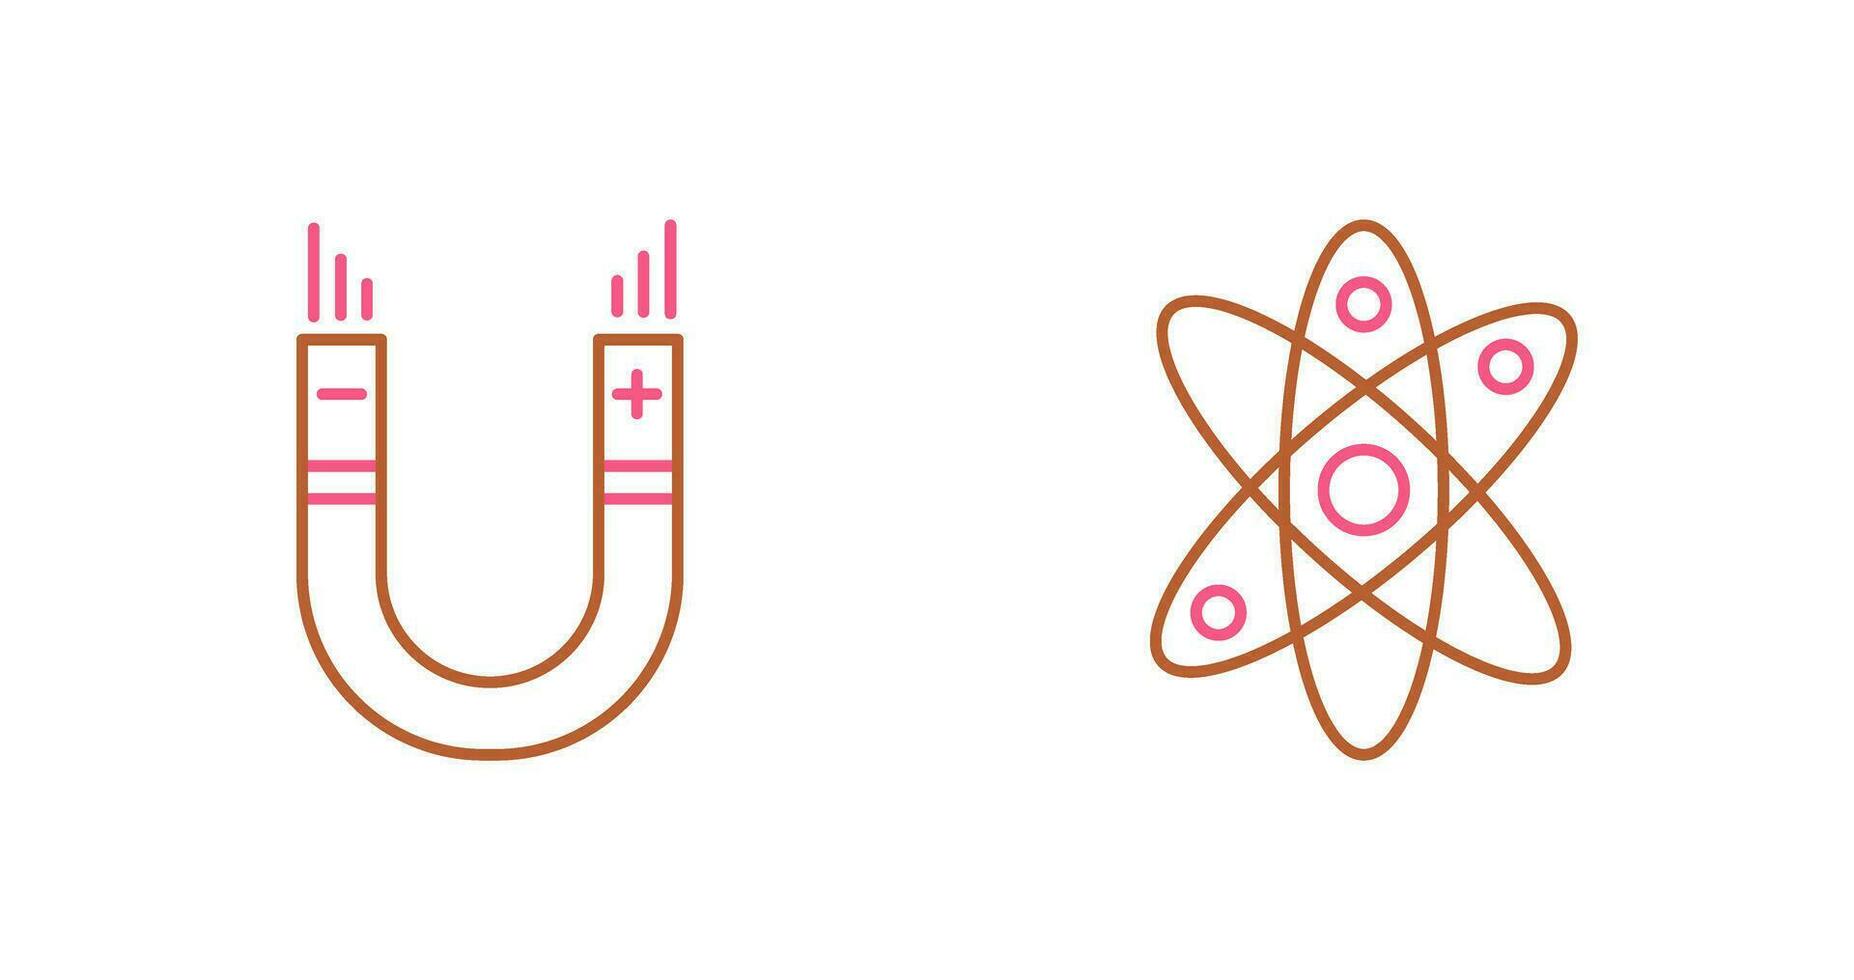 átomo y imán, atracción icono vector